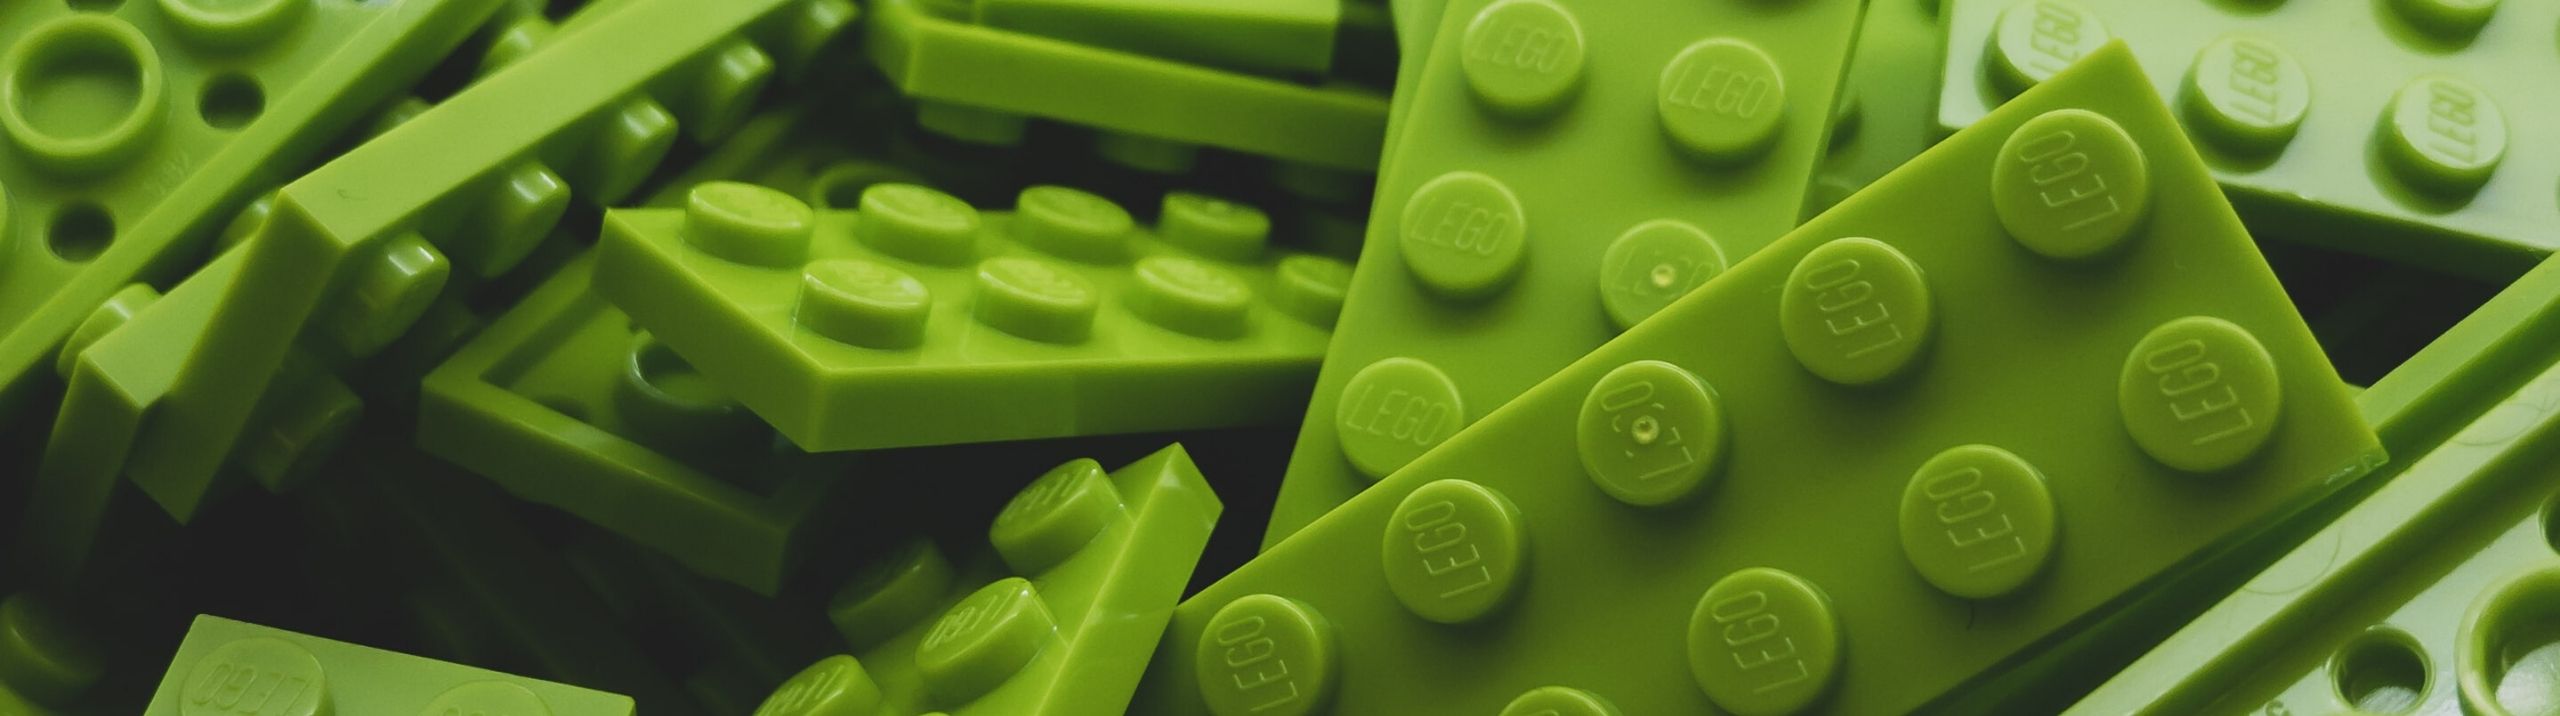 Des blocs Lego verts.